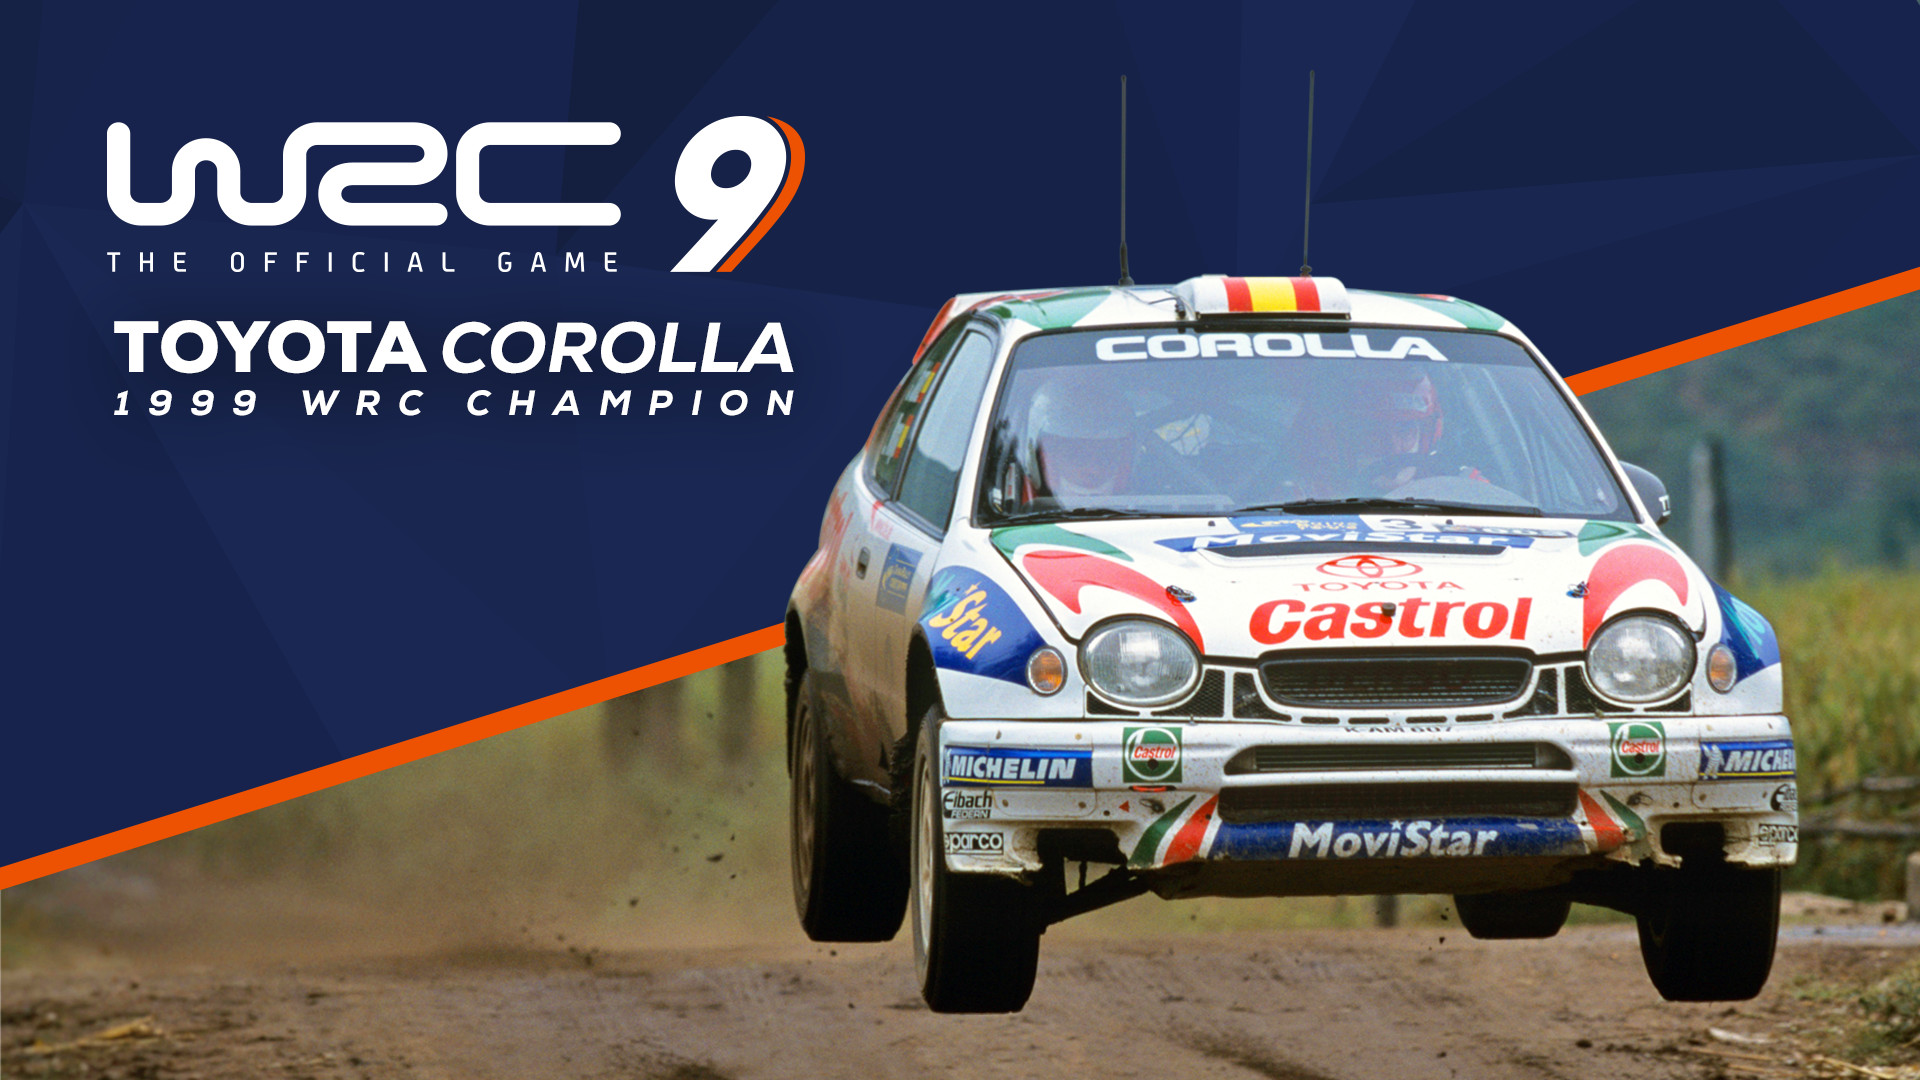 WRC 9 - Toyota Corolla 1999 DLC Steam CD Key 1.94$